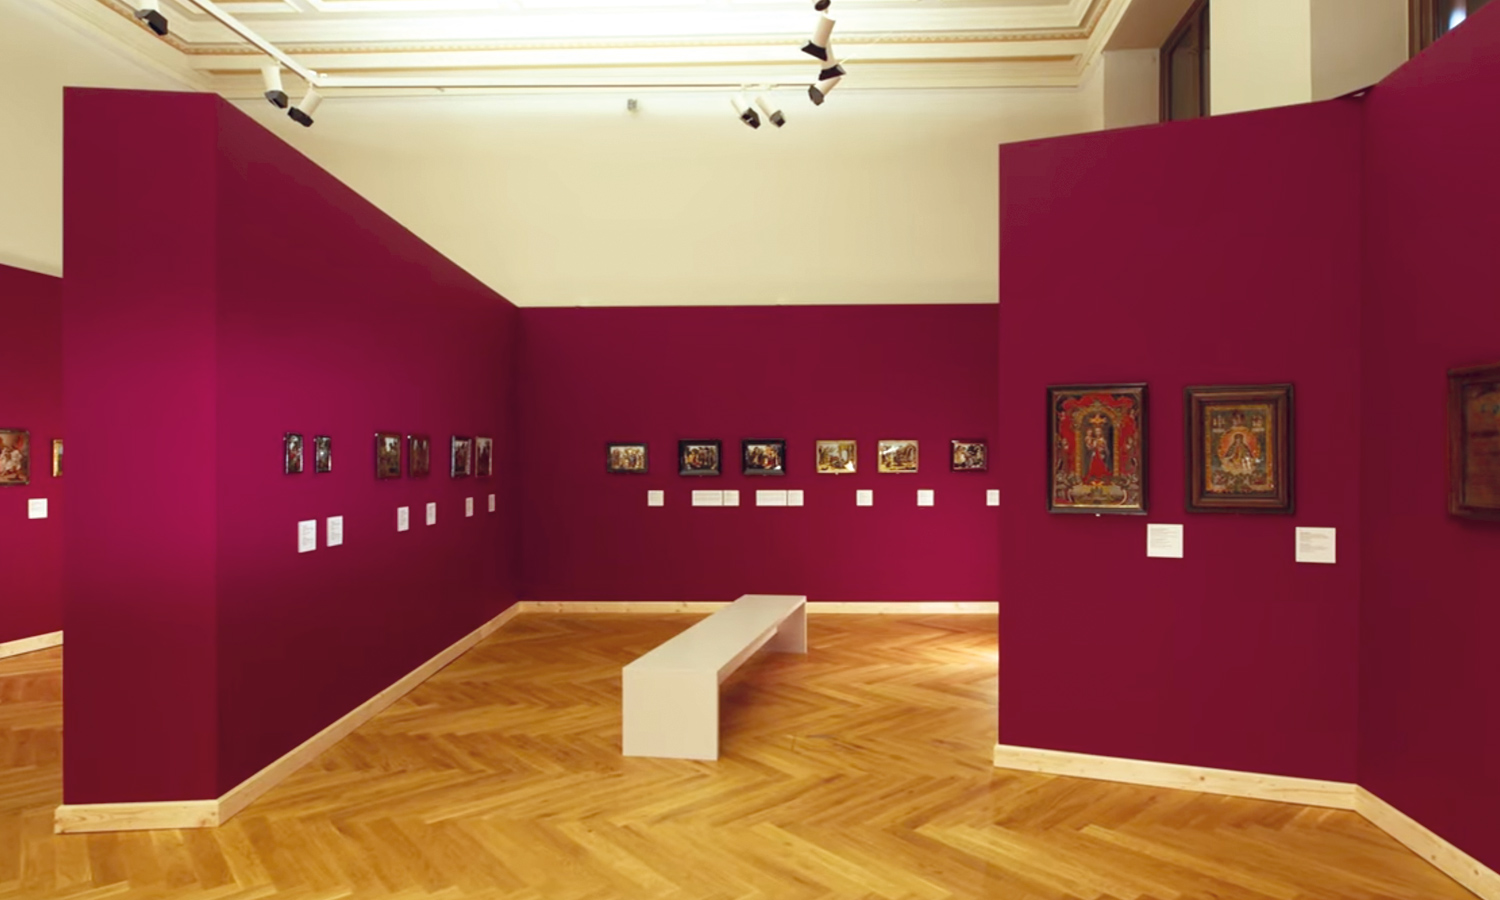 Ausstellungsraum mit Beleuchtung und Sitzbänken, umgesetzt mit Mila-wall im UPM Prag